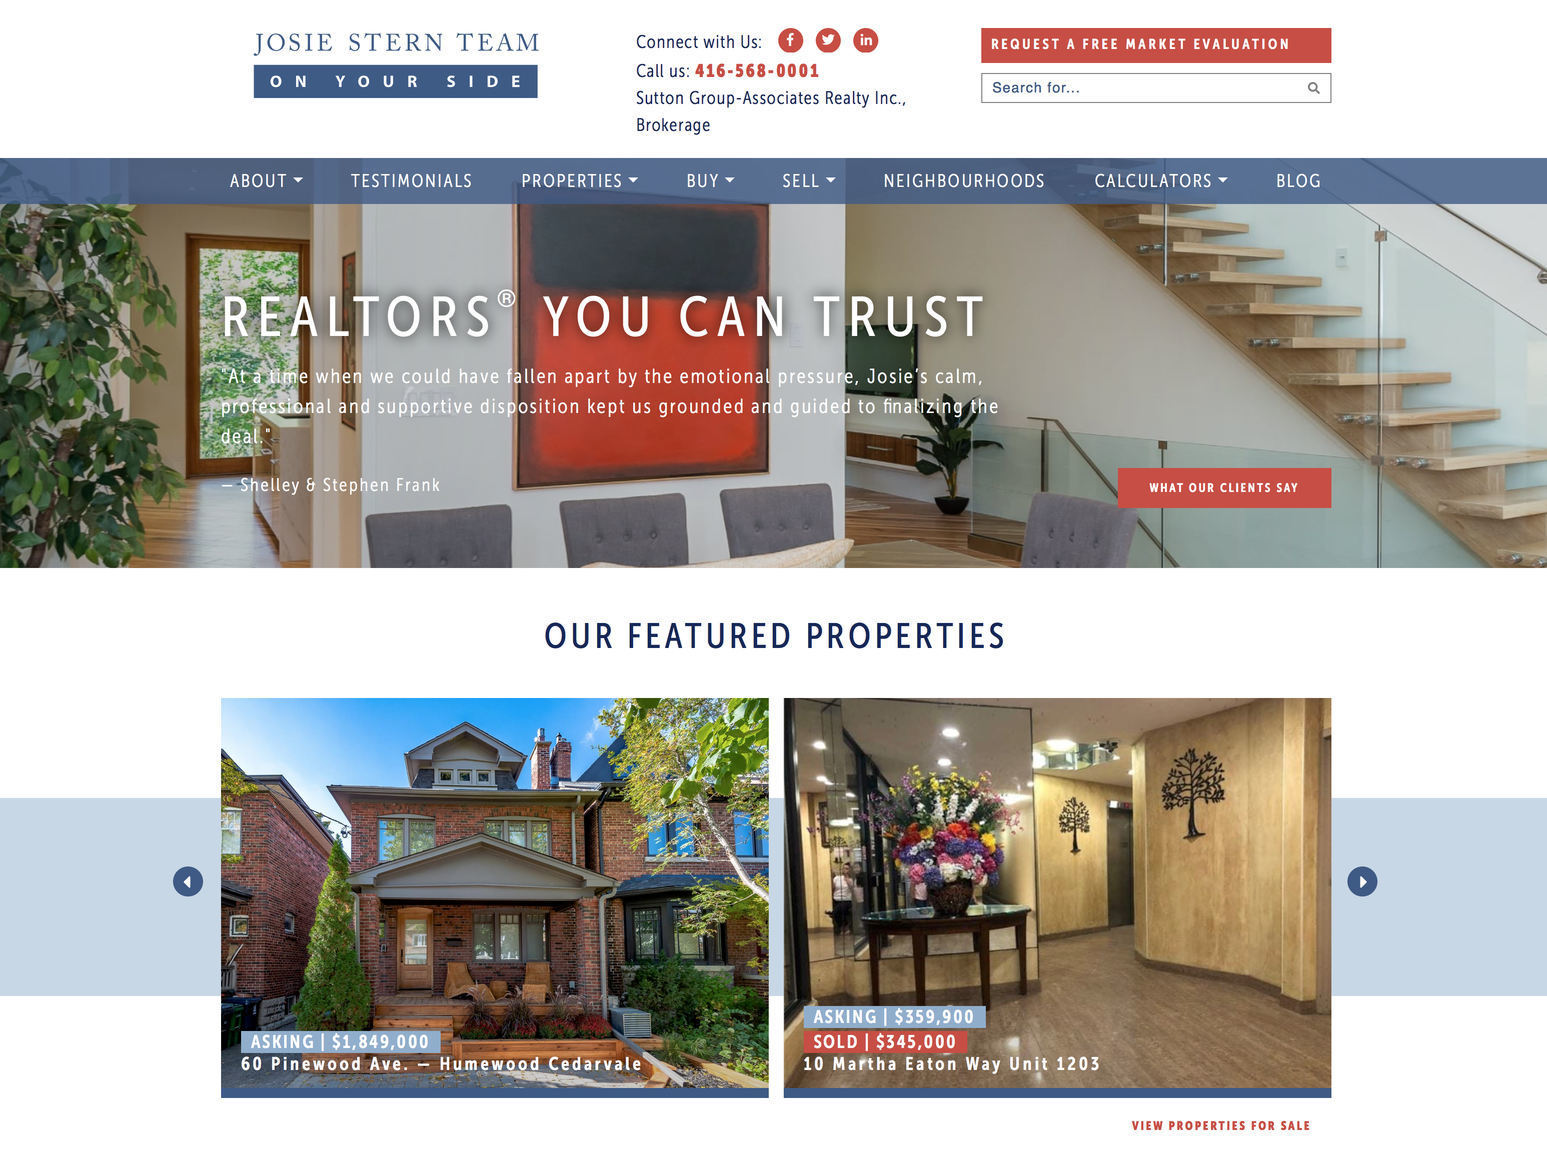 Josie Stern Team | Toronto Real Estate Agents